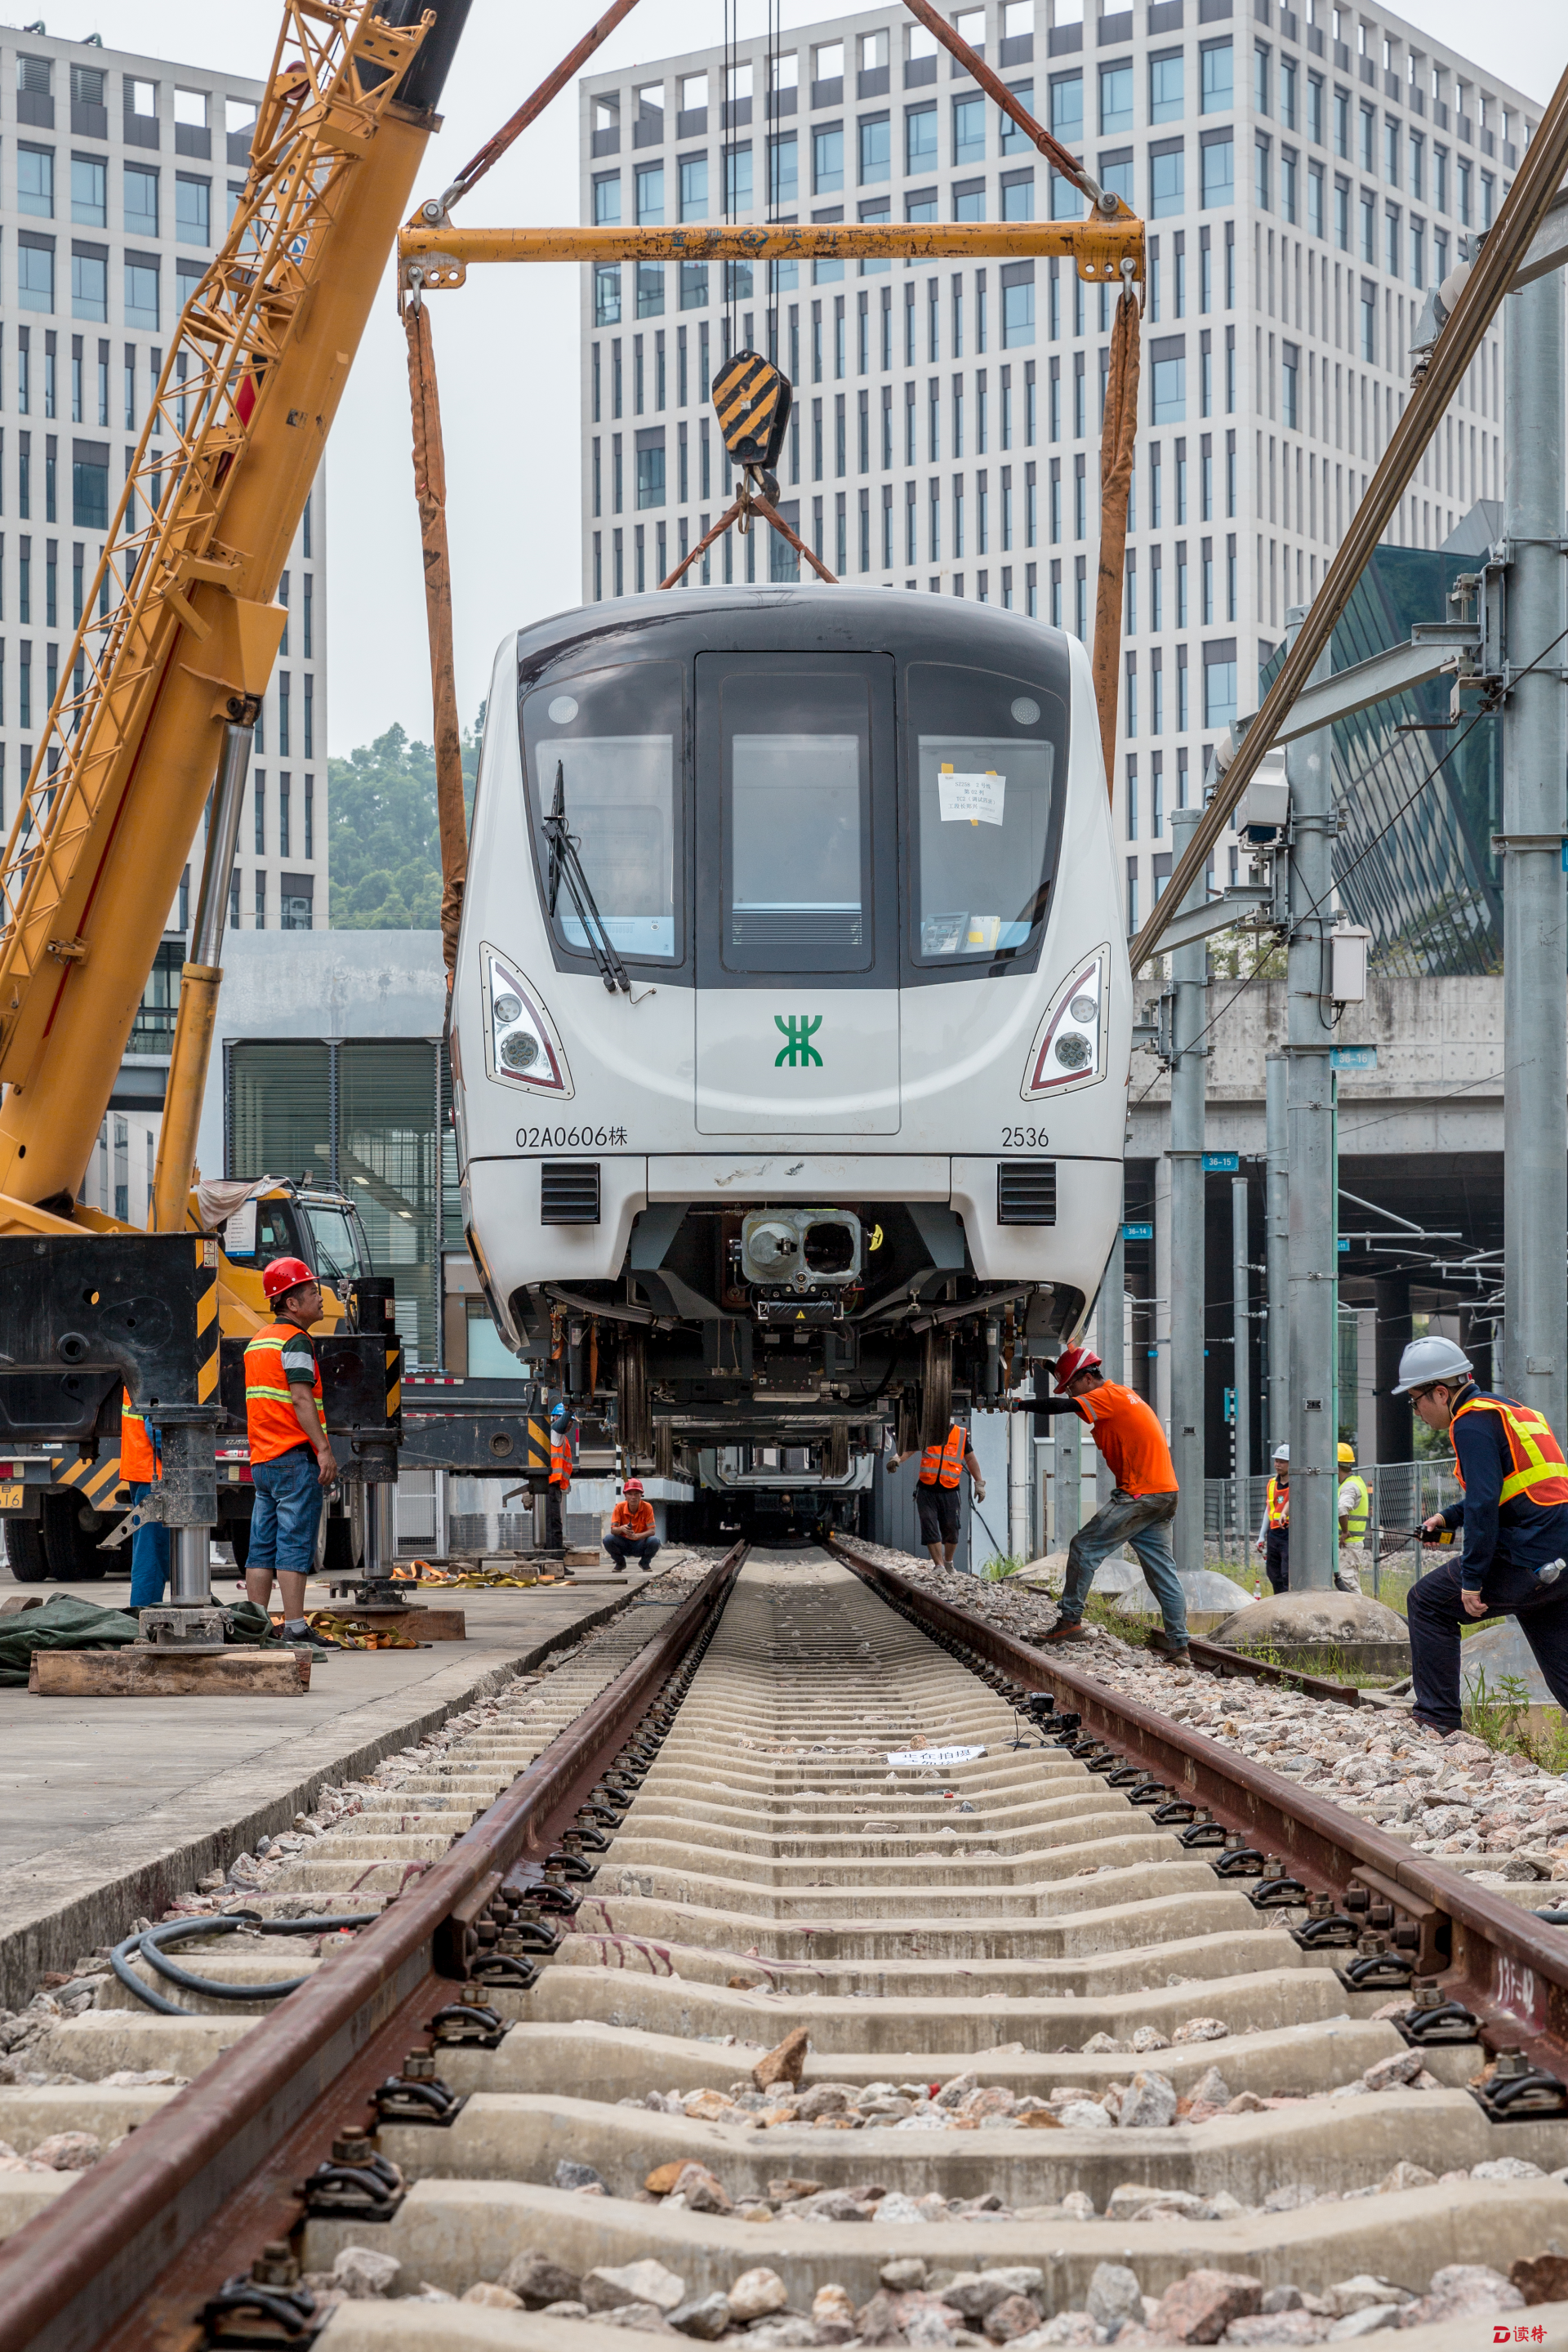 深圳地铁2号线三期两列车运抵深圳,预计明年开通初期运营